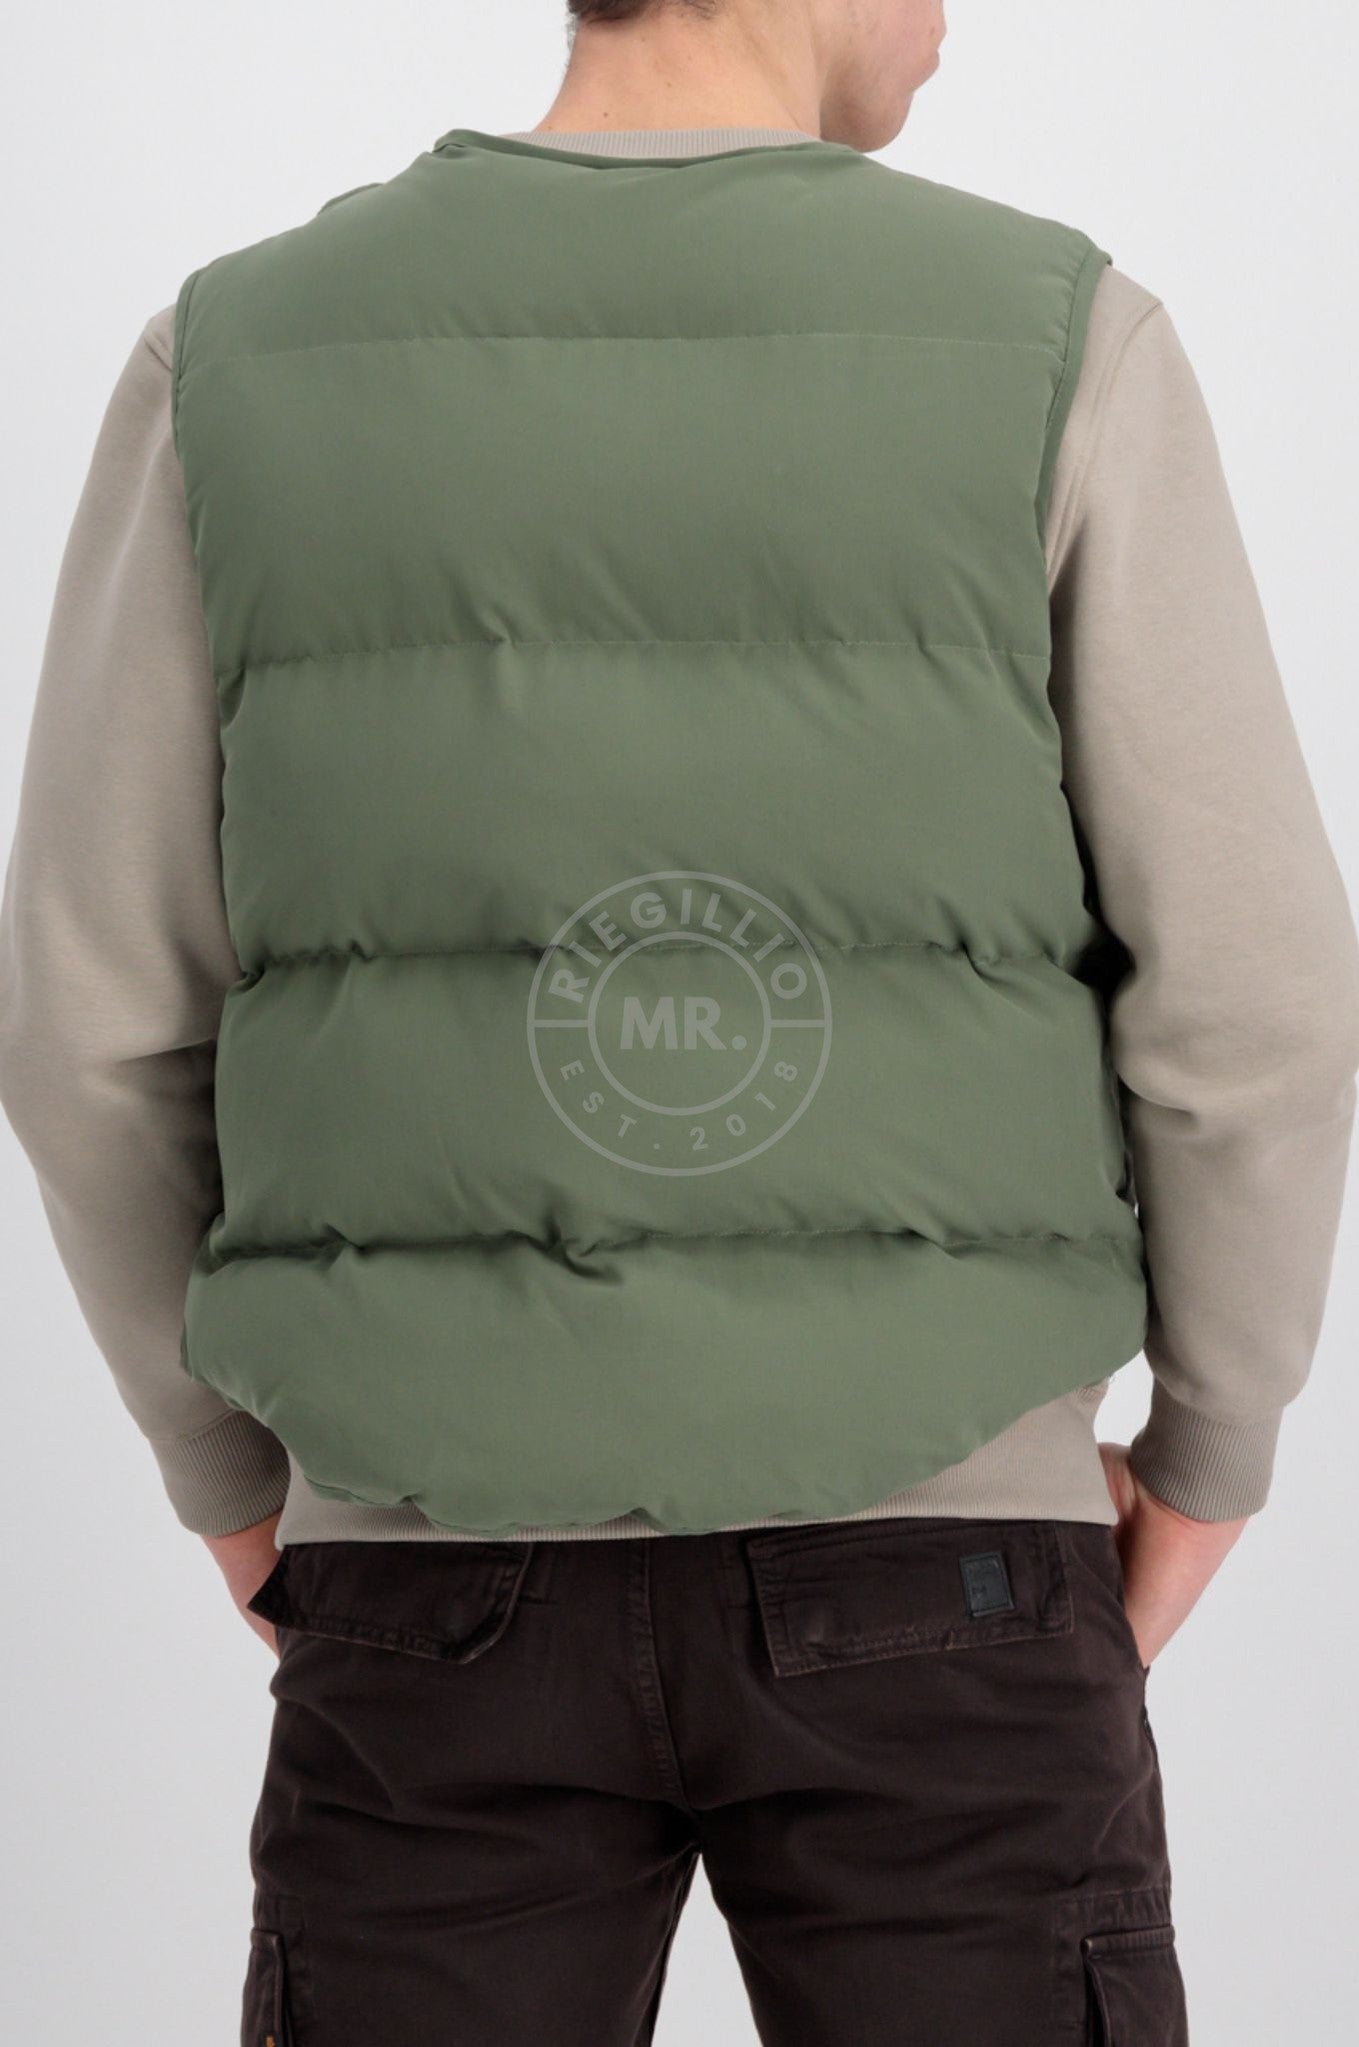 Alpha Industries Protector Puffer Green Vest - MR. at Sage Riegillio